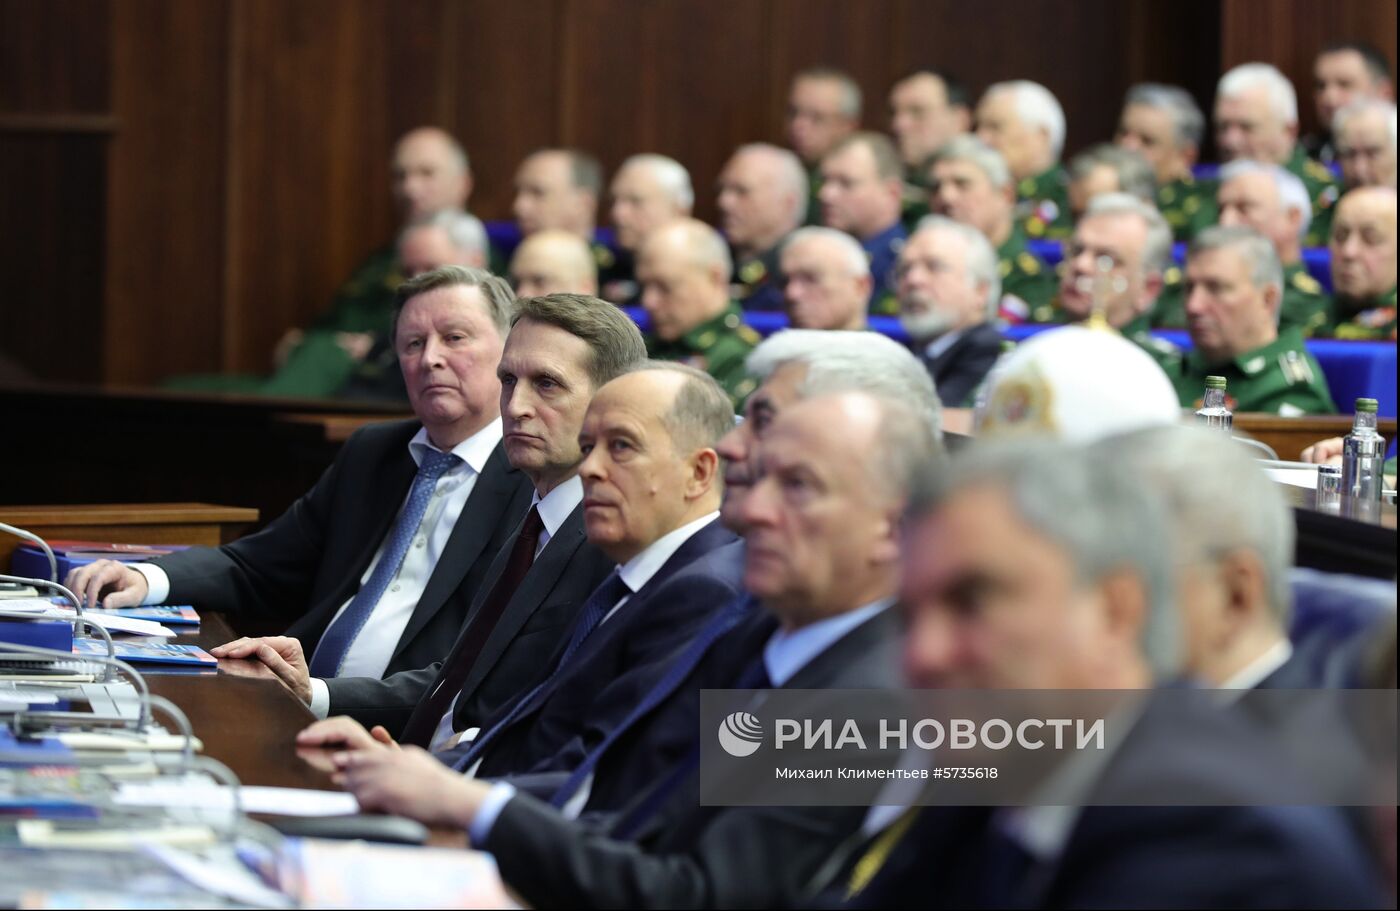 Президент РФ В. Путин принял участие в расширенном заседании коллегии министерства обороны РФ